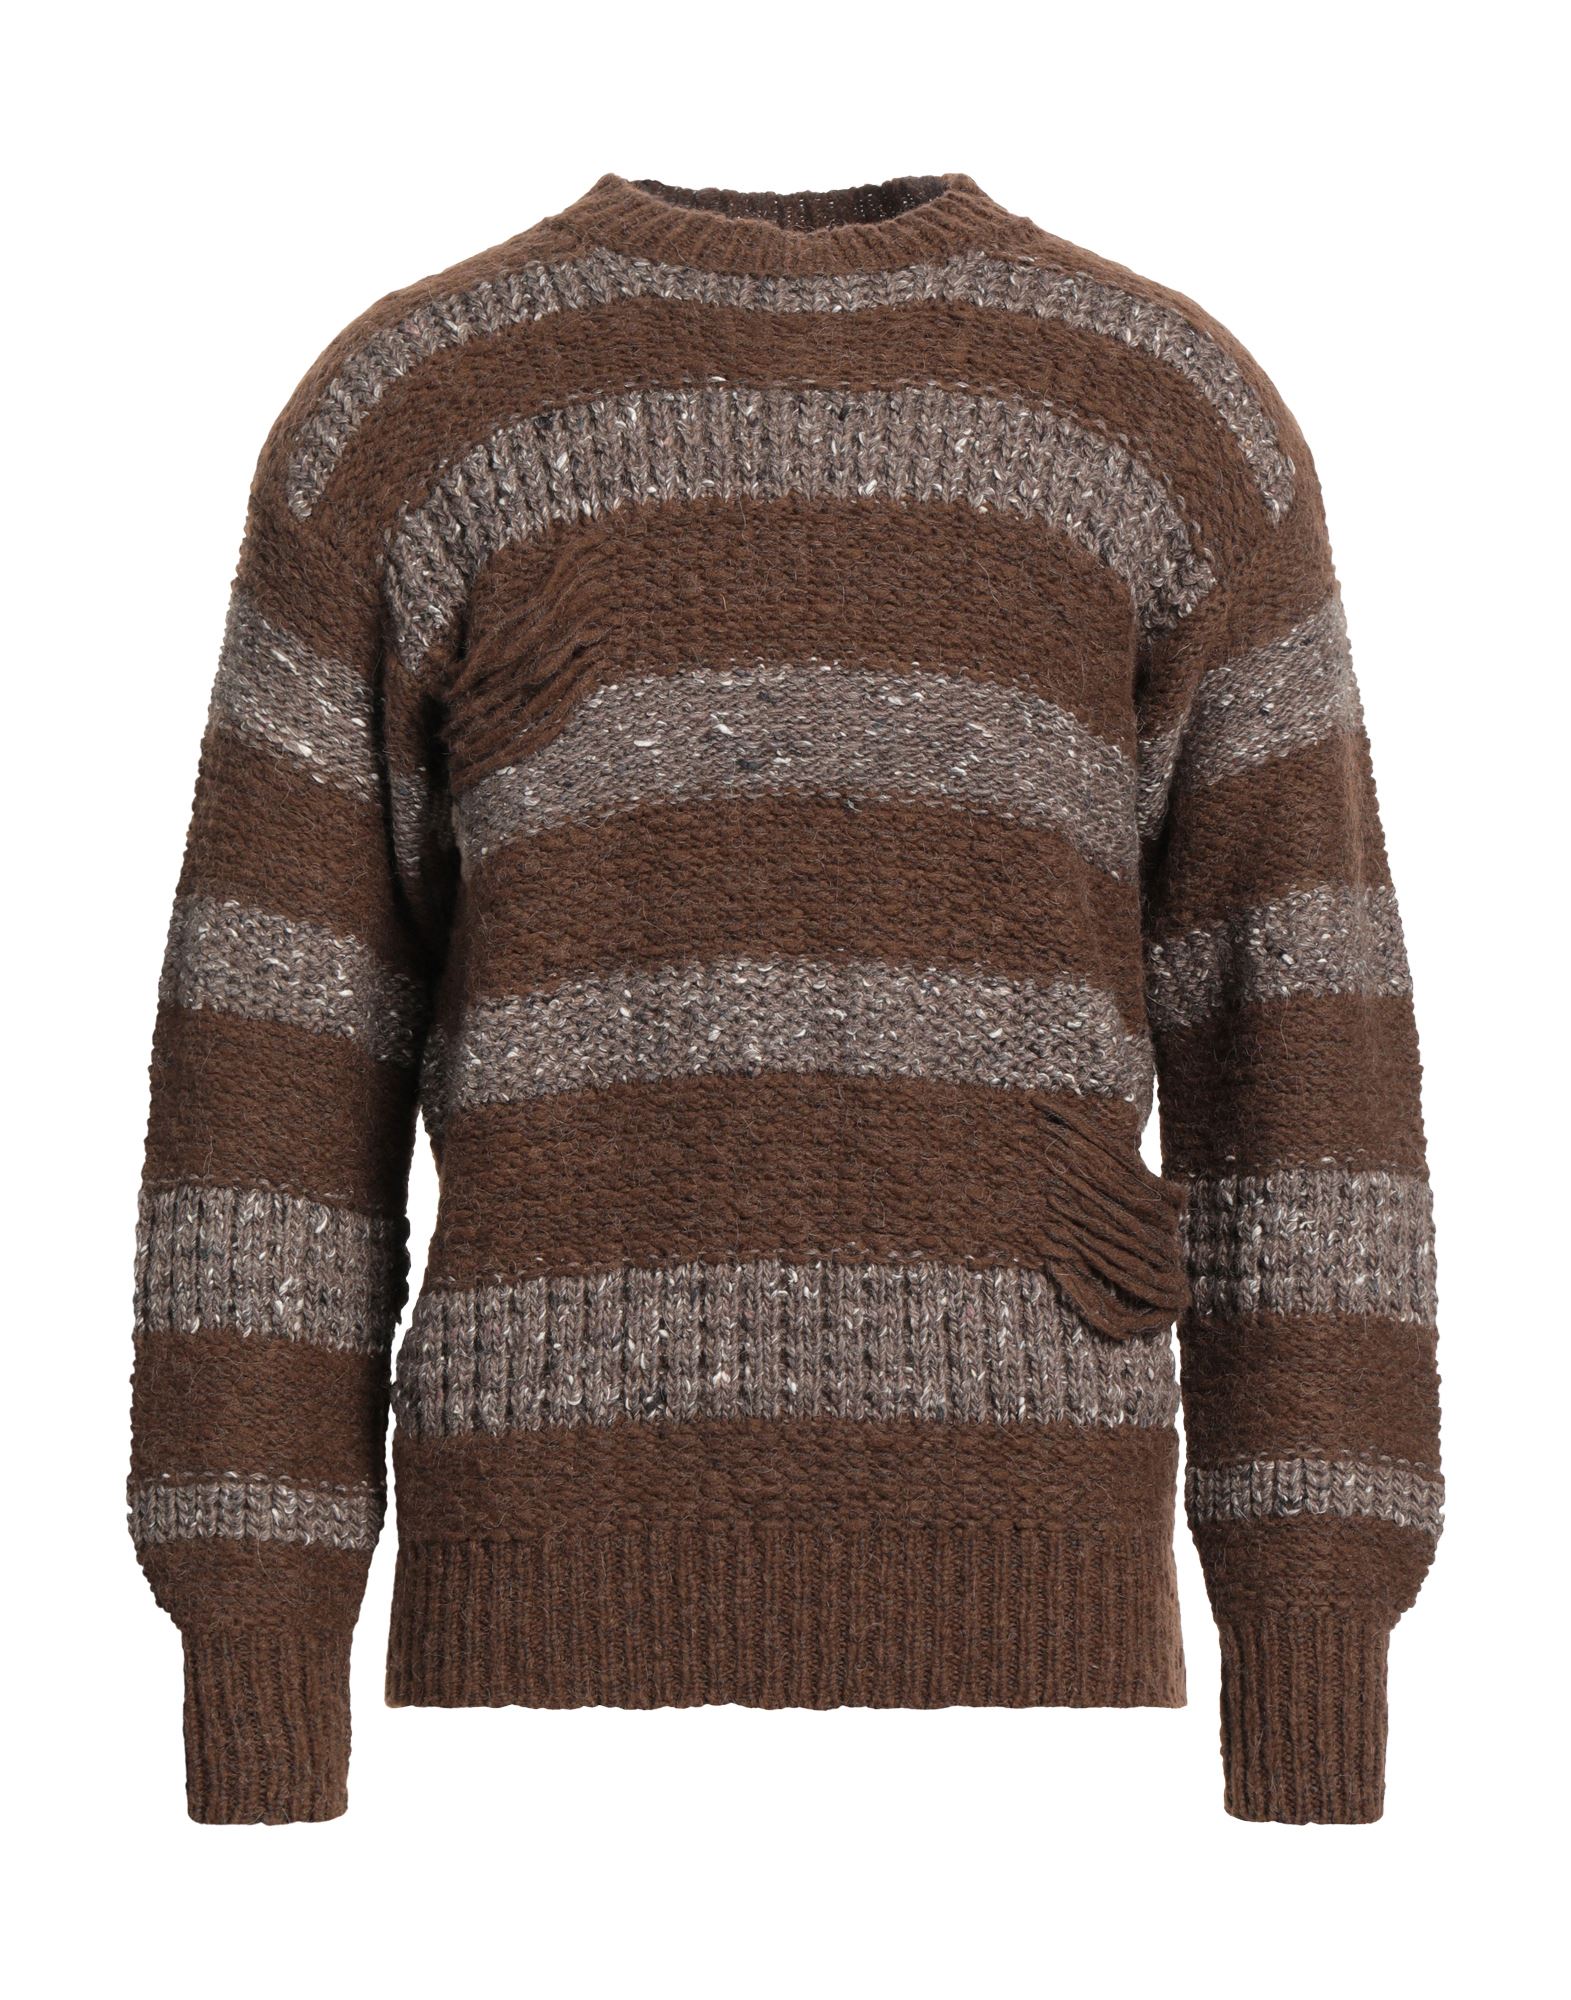 Maison Fl Neur Sweaters In Brown